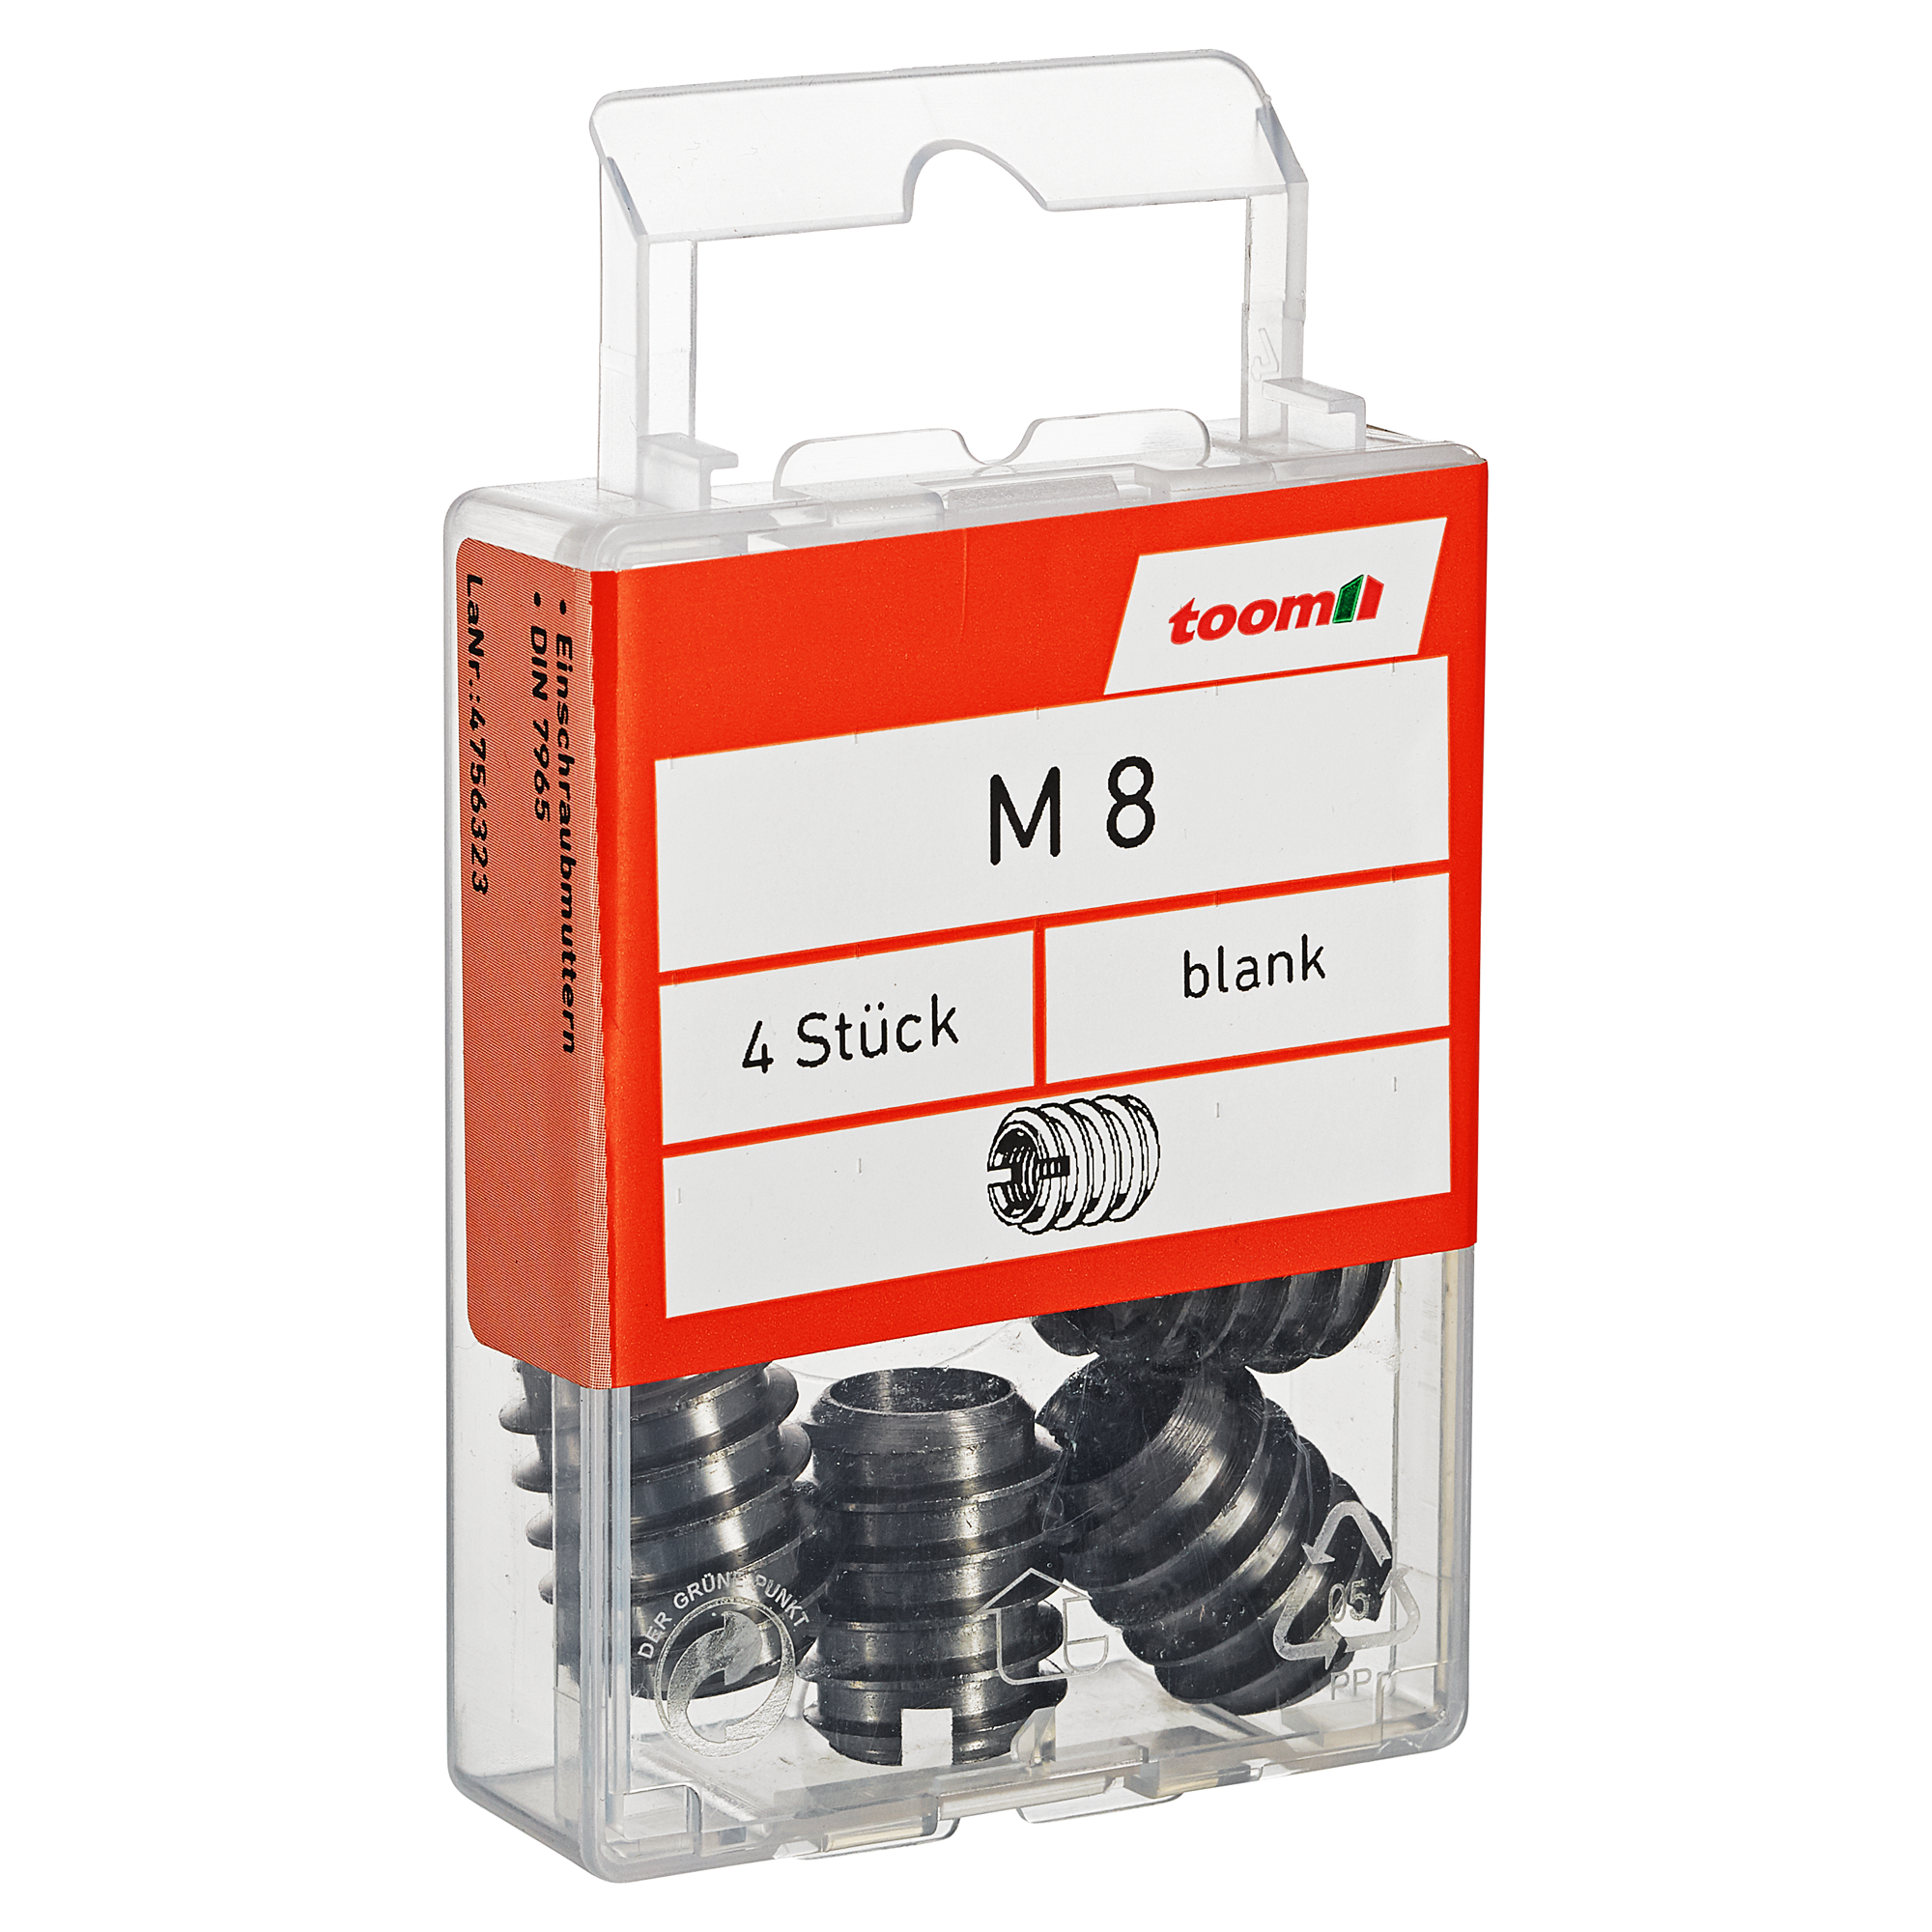 Einschraubmuttern M8 Stahl blank 4 Stück + product picture